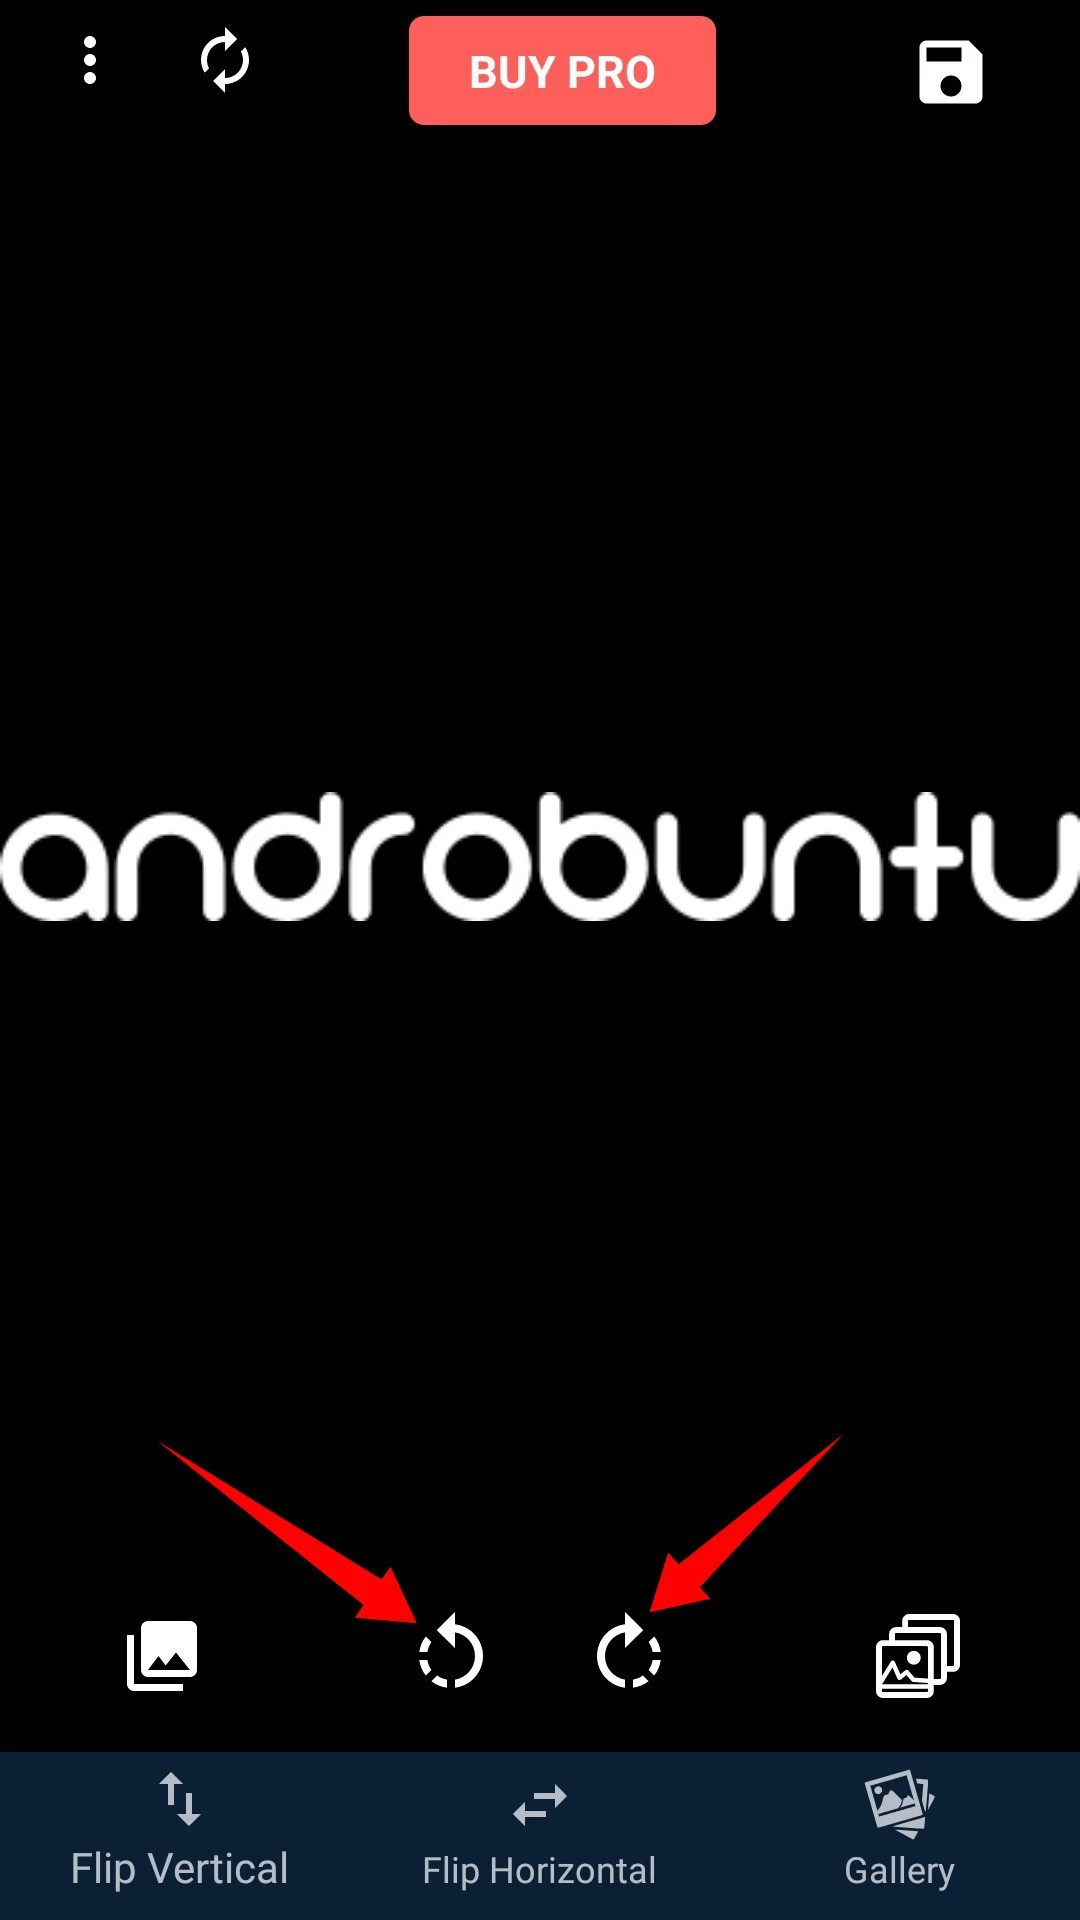 Cara Memutar Foto di Android by Androbuntu 10